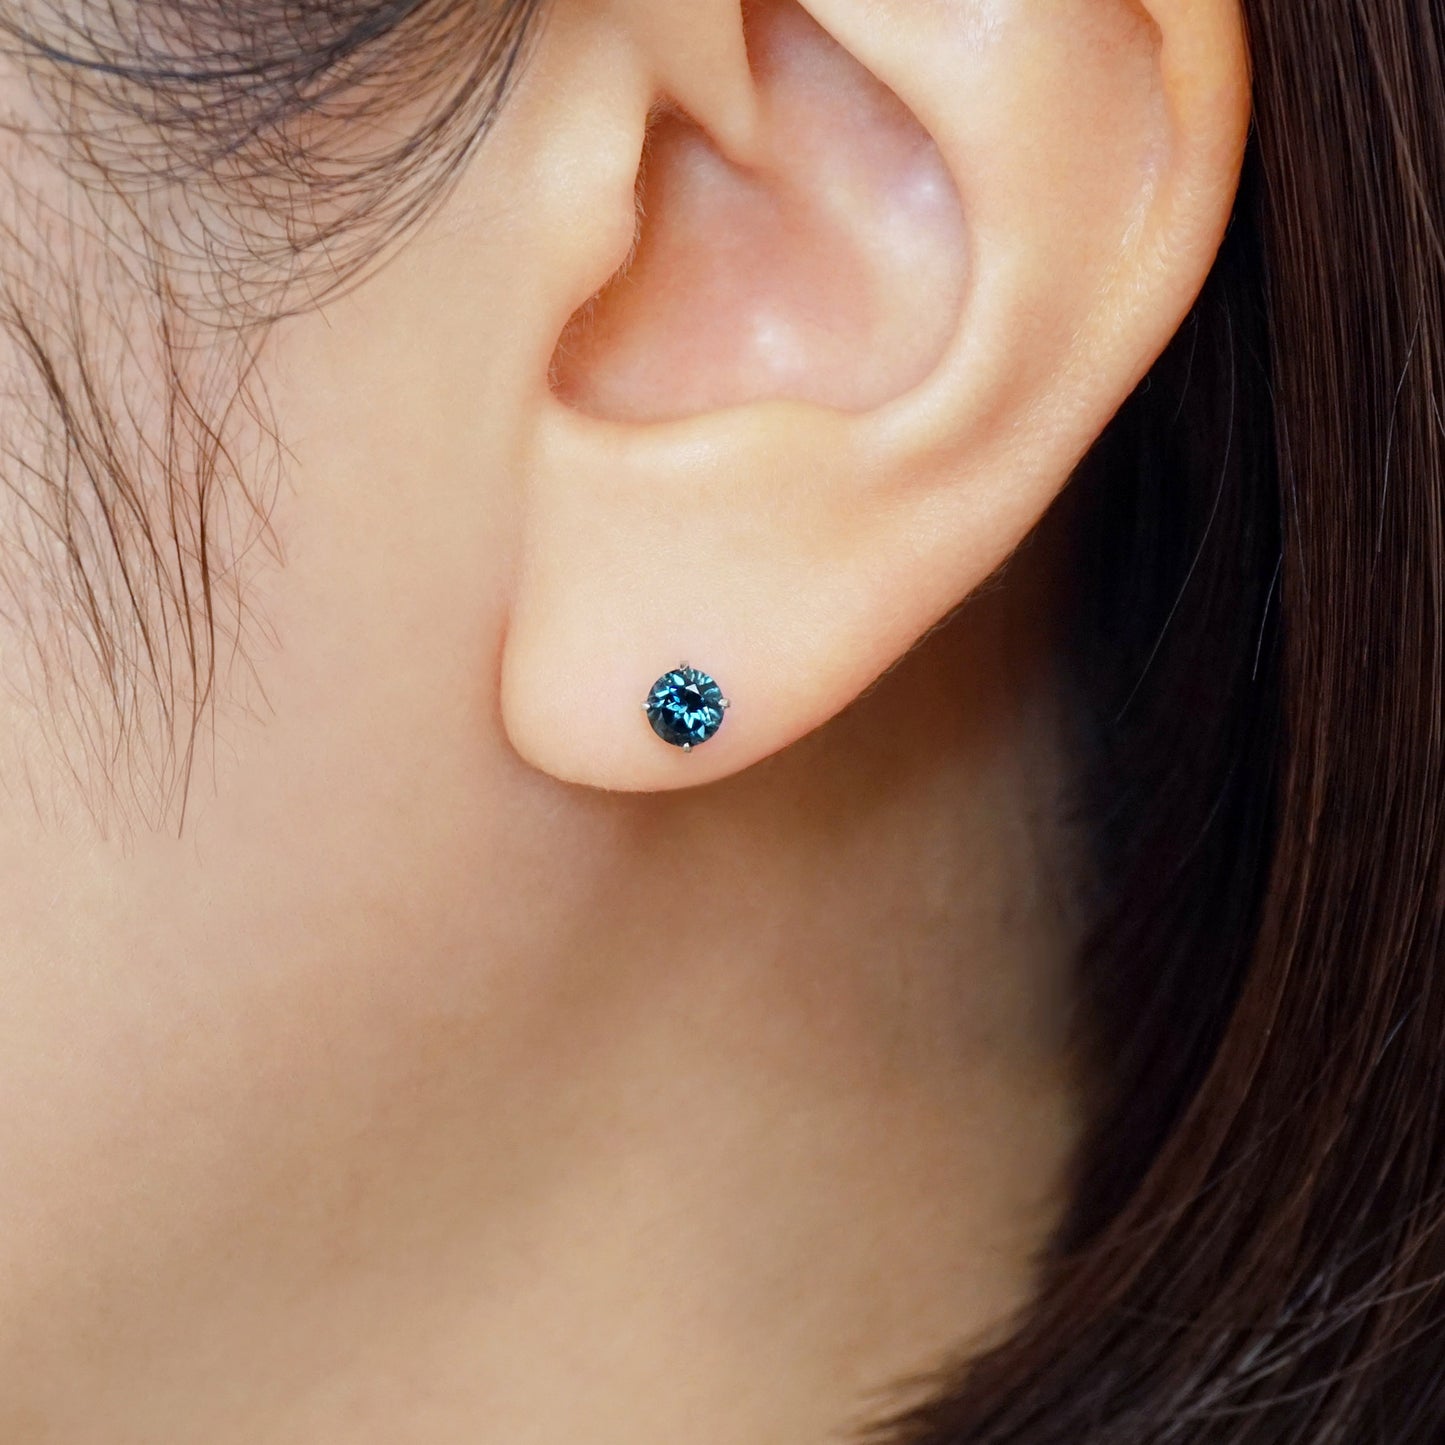 [Second Earrings] Platinum London Blue Topaz Earrings - Model Image